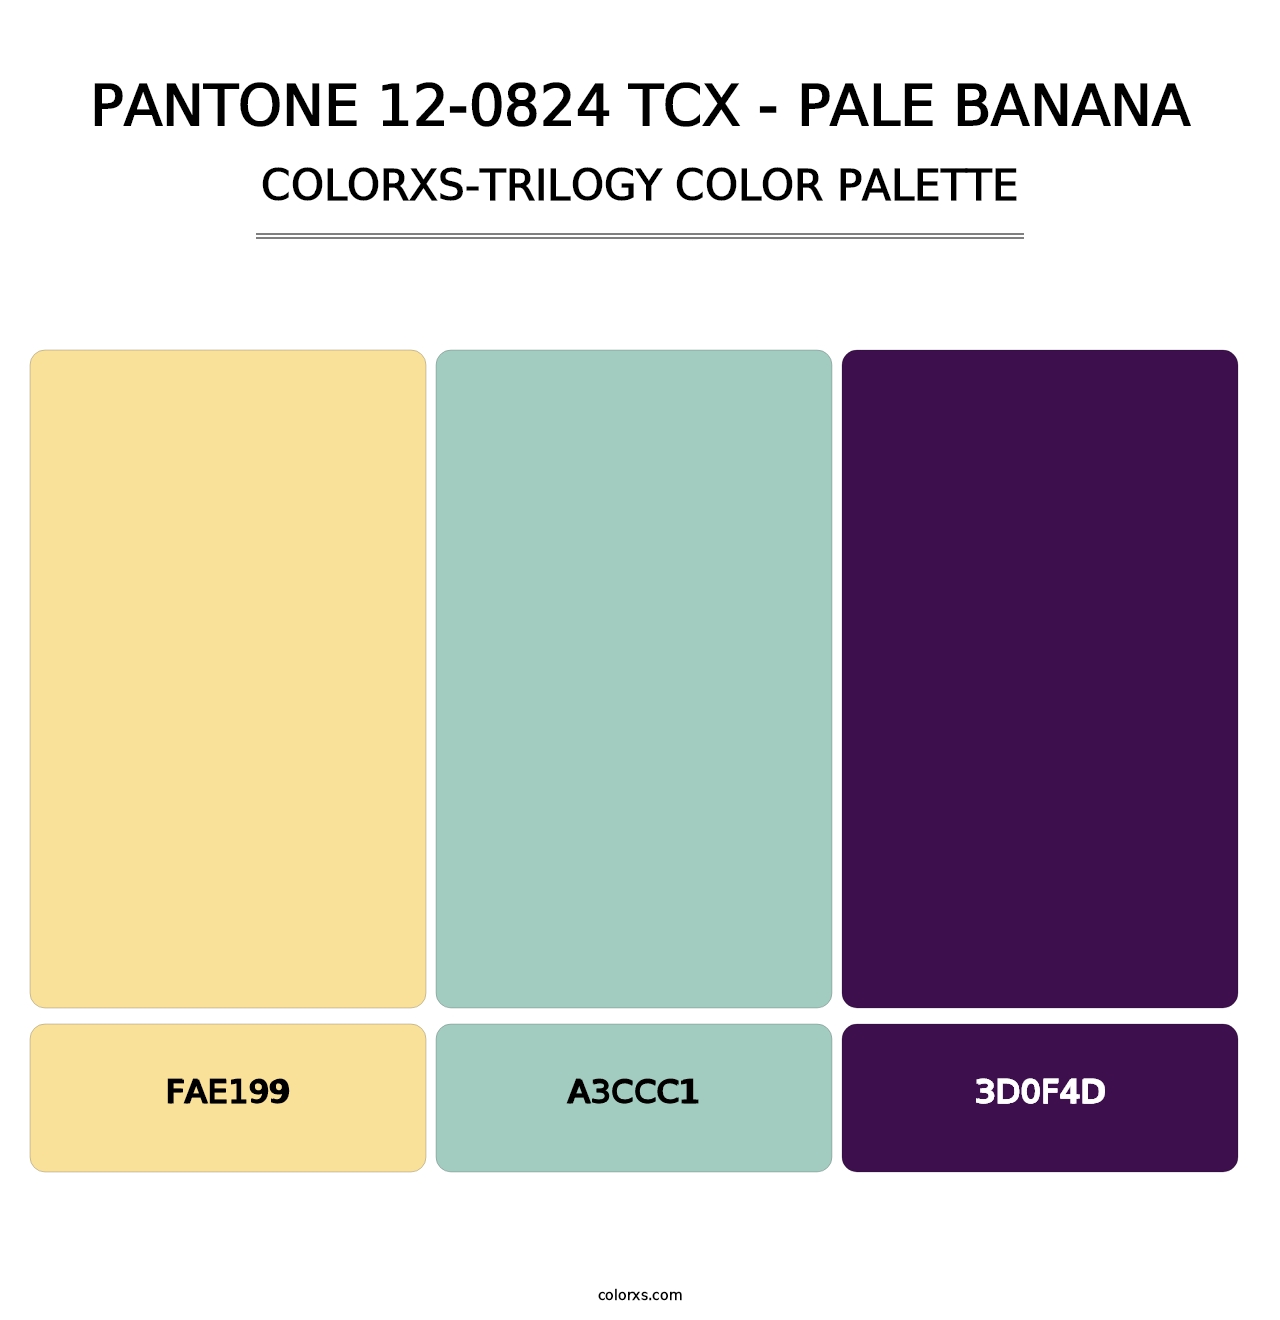 PANTONE 12-0824 TCX - Pale Banana - Colorxs Trilogy Palette